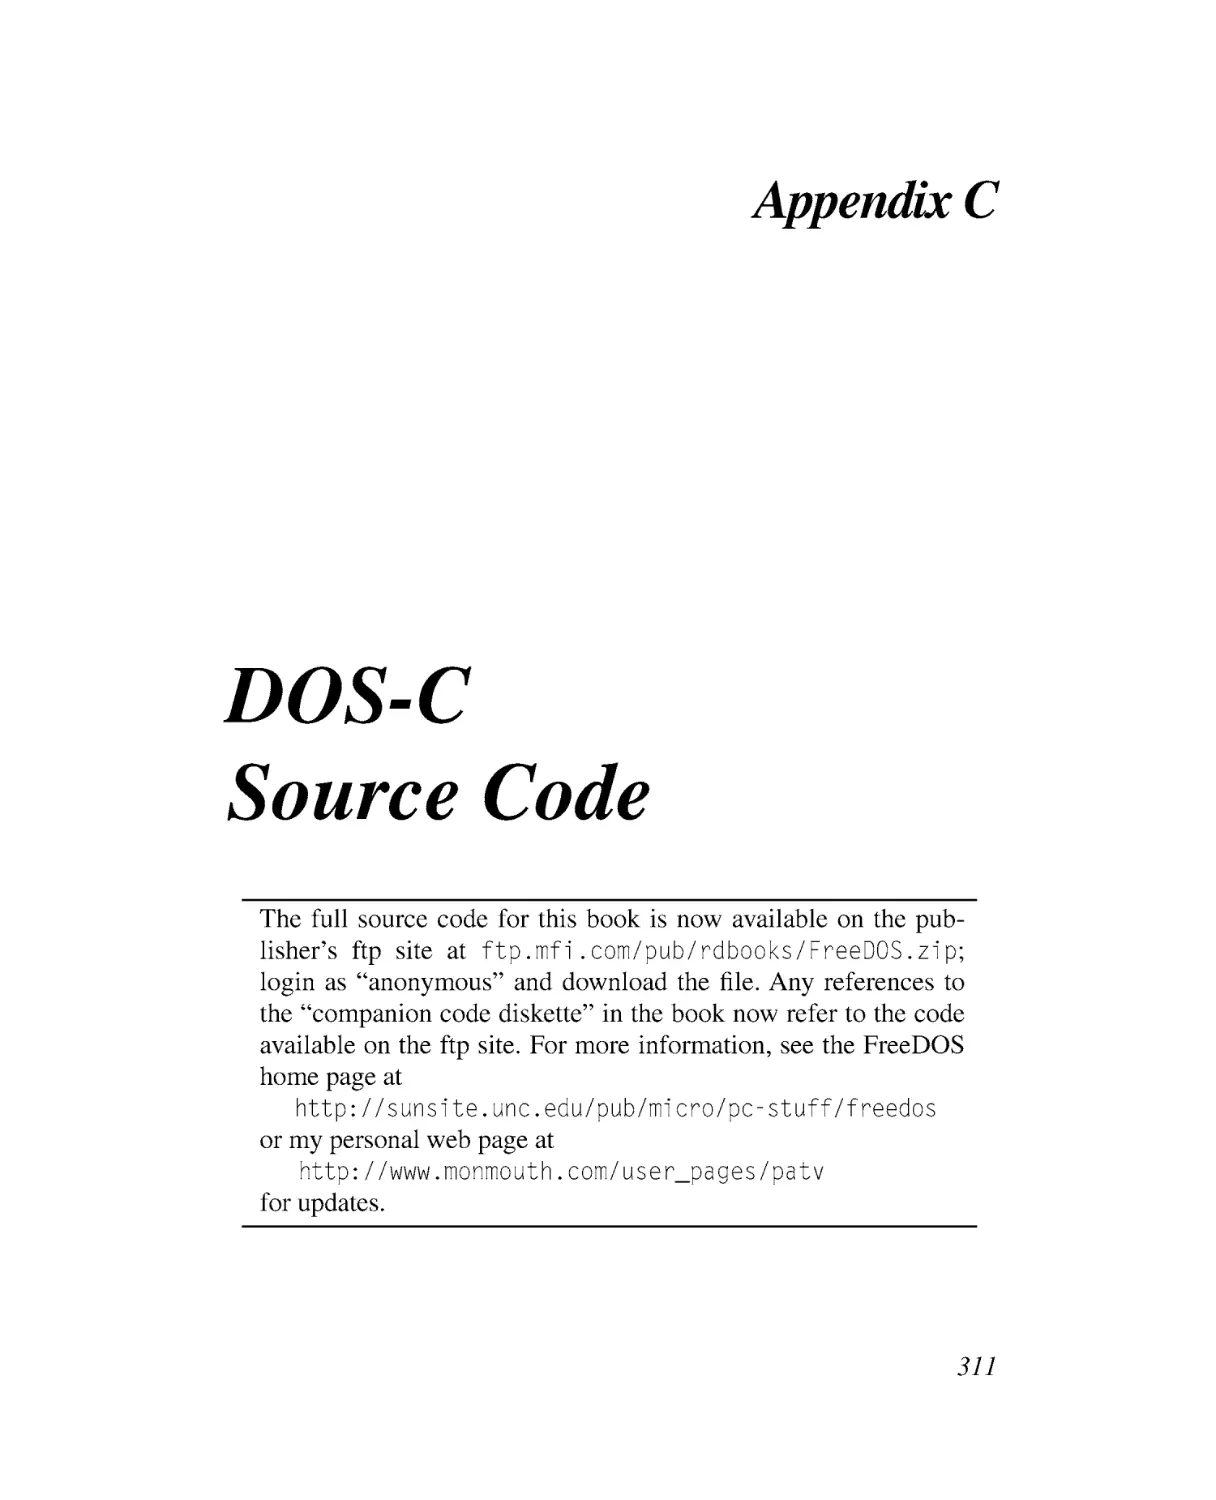 Appendix C DOS-C Distribution Disk